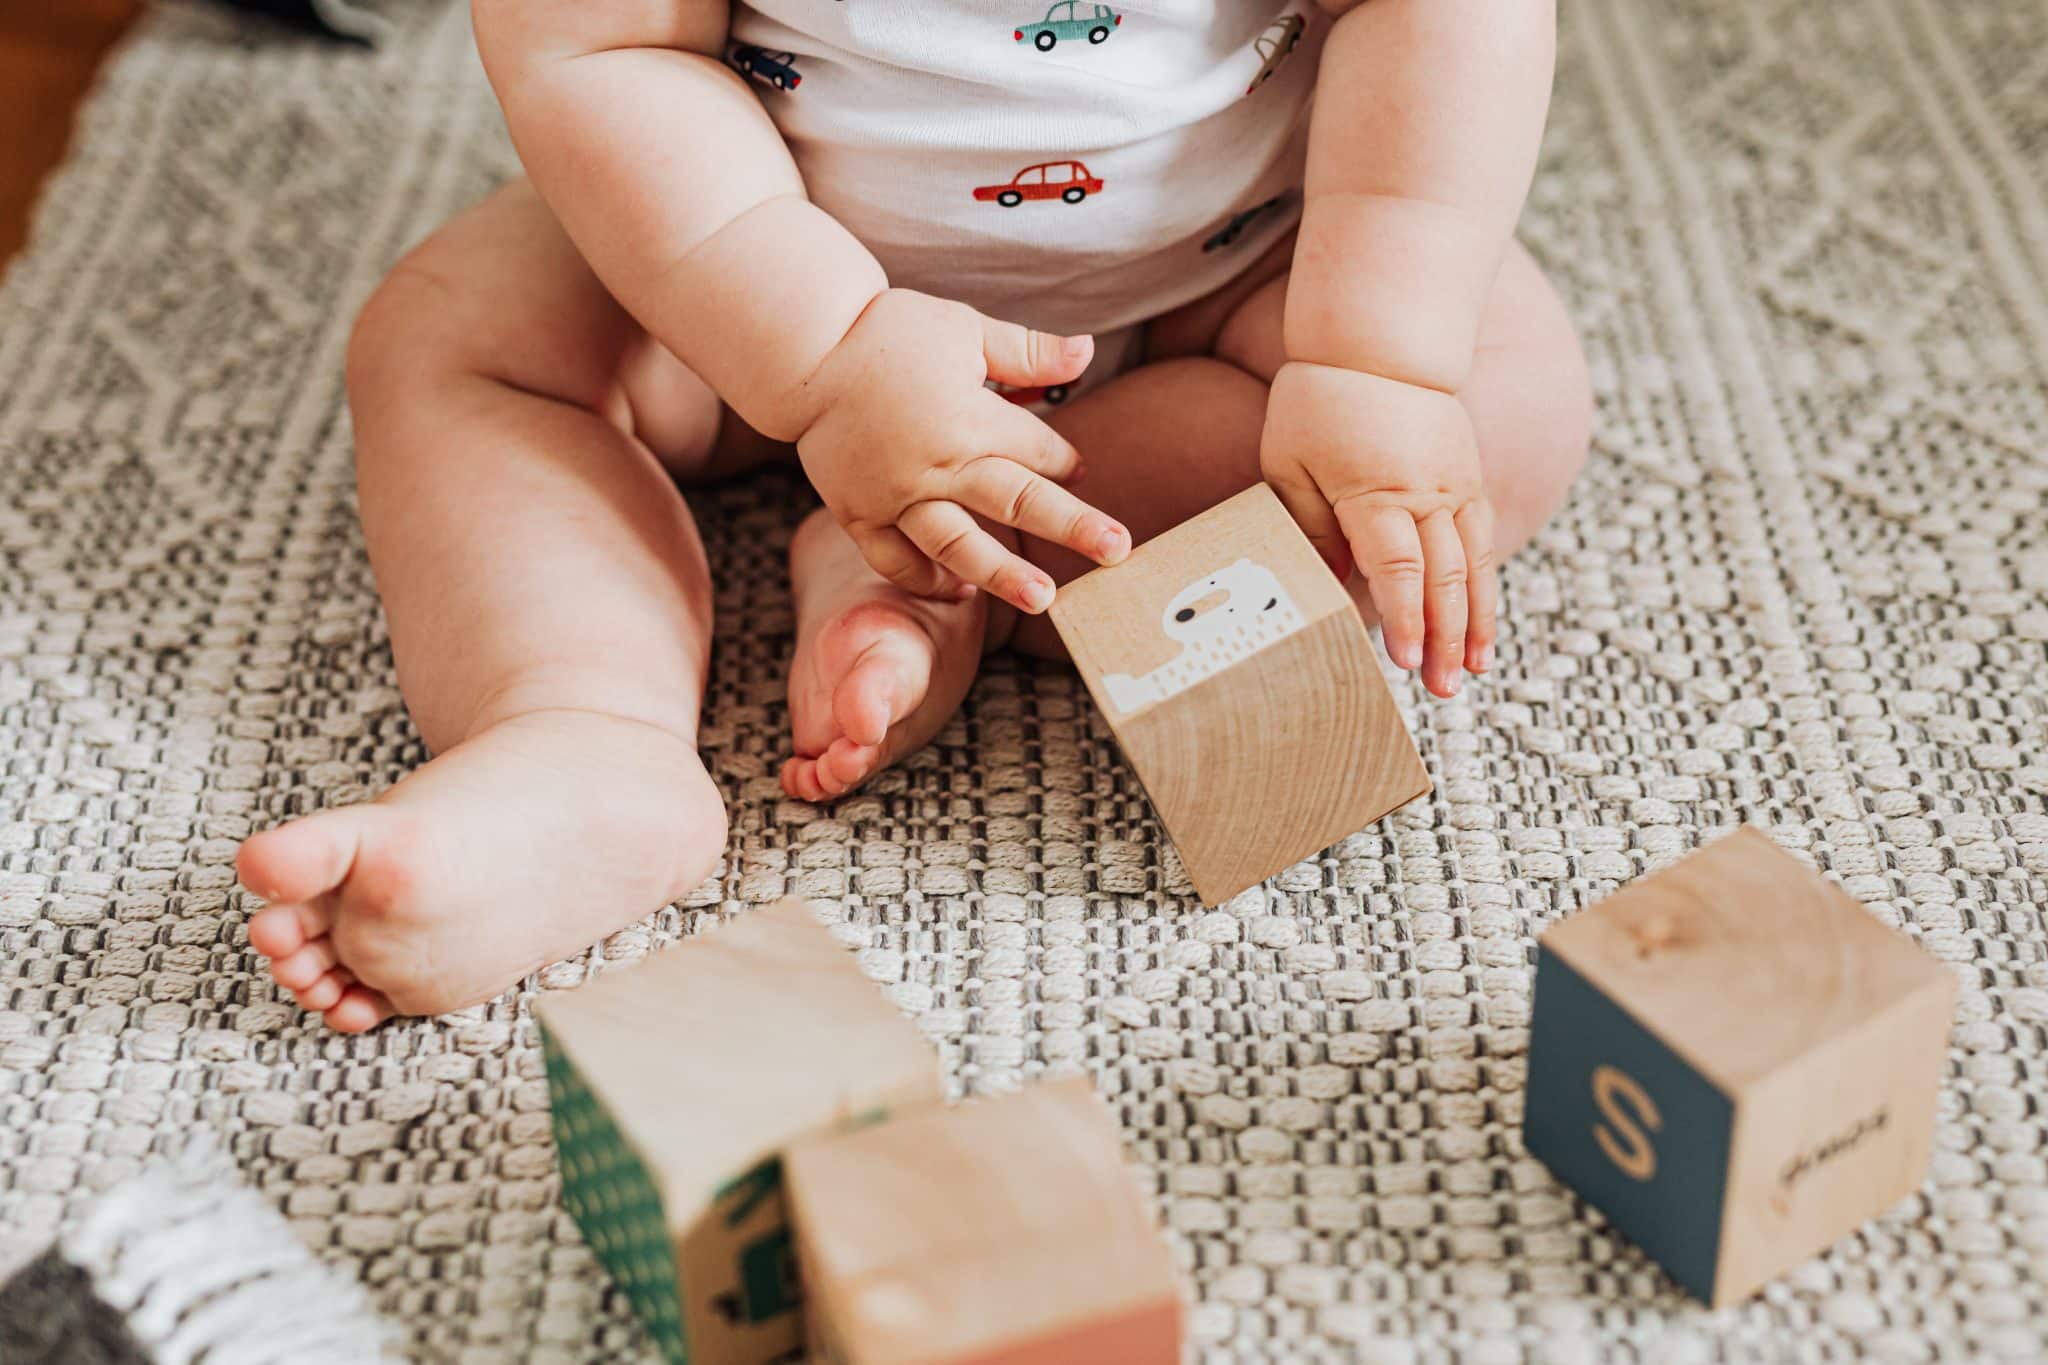 meilleur jouet bébé 12 mois - sélection jouets d'éveil - Mam'Advisor